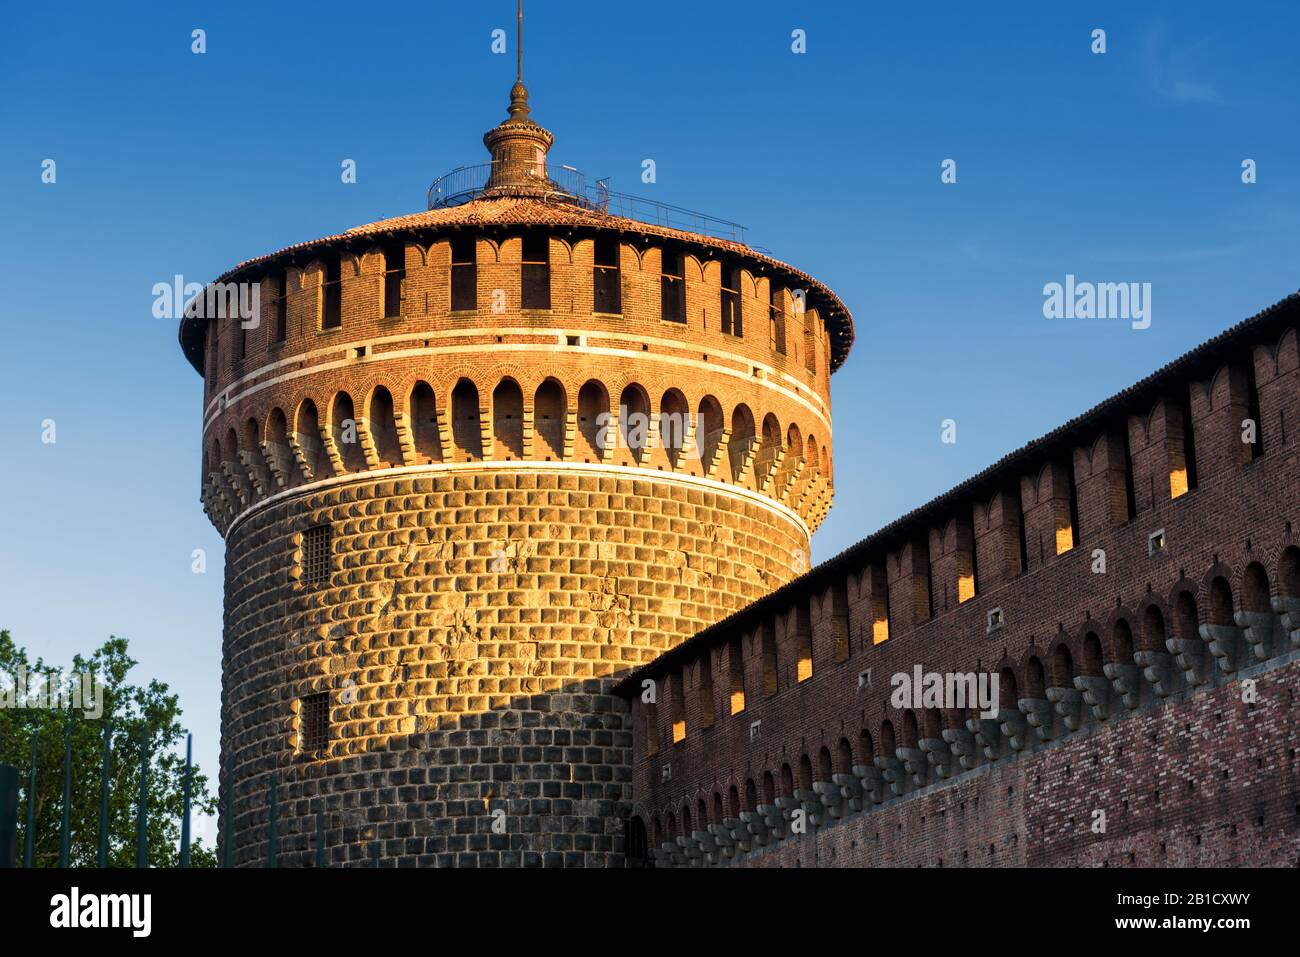 Sforza Castel (Castello Sforzesco) in Milan, Italy. This castle was built in the 15th century by Francesco Sforza, Duke of Milan. Stock Photo